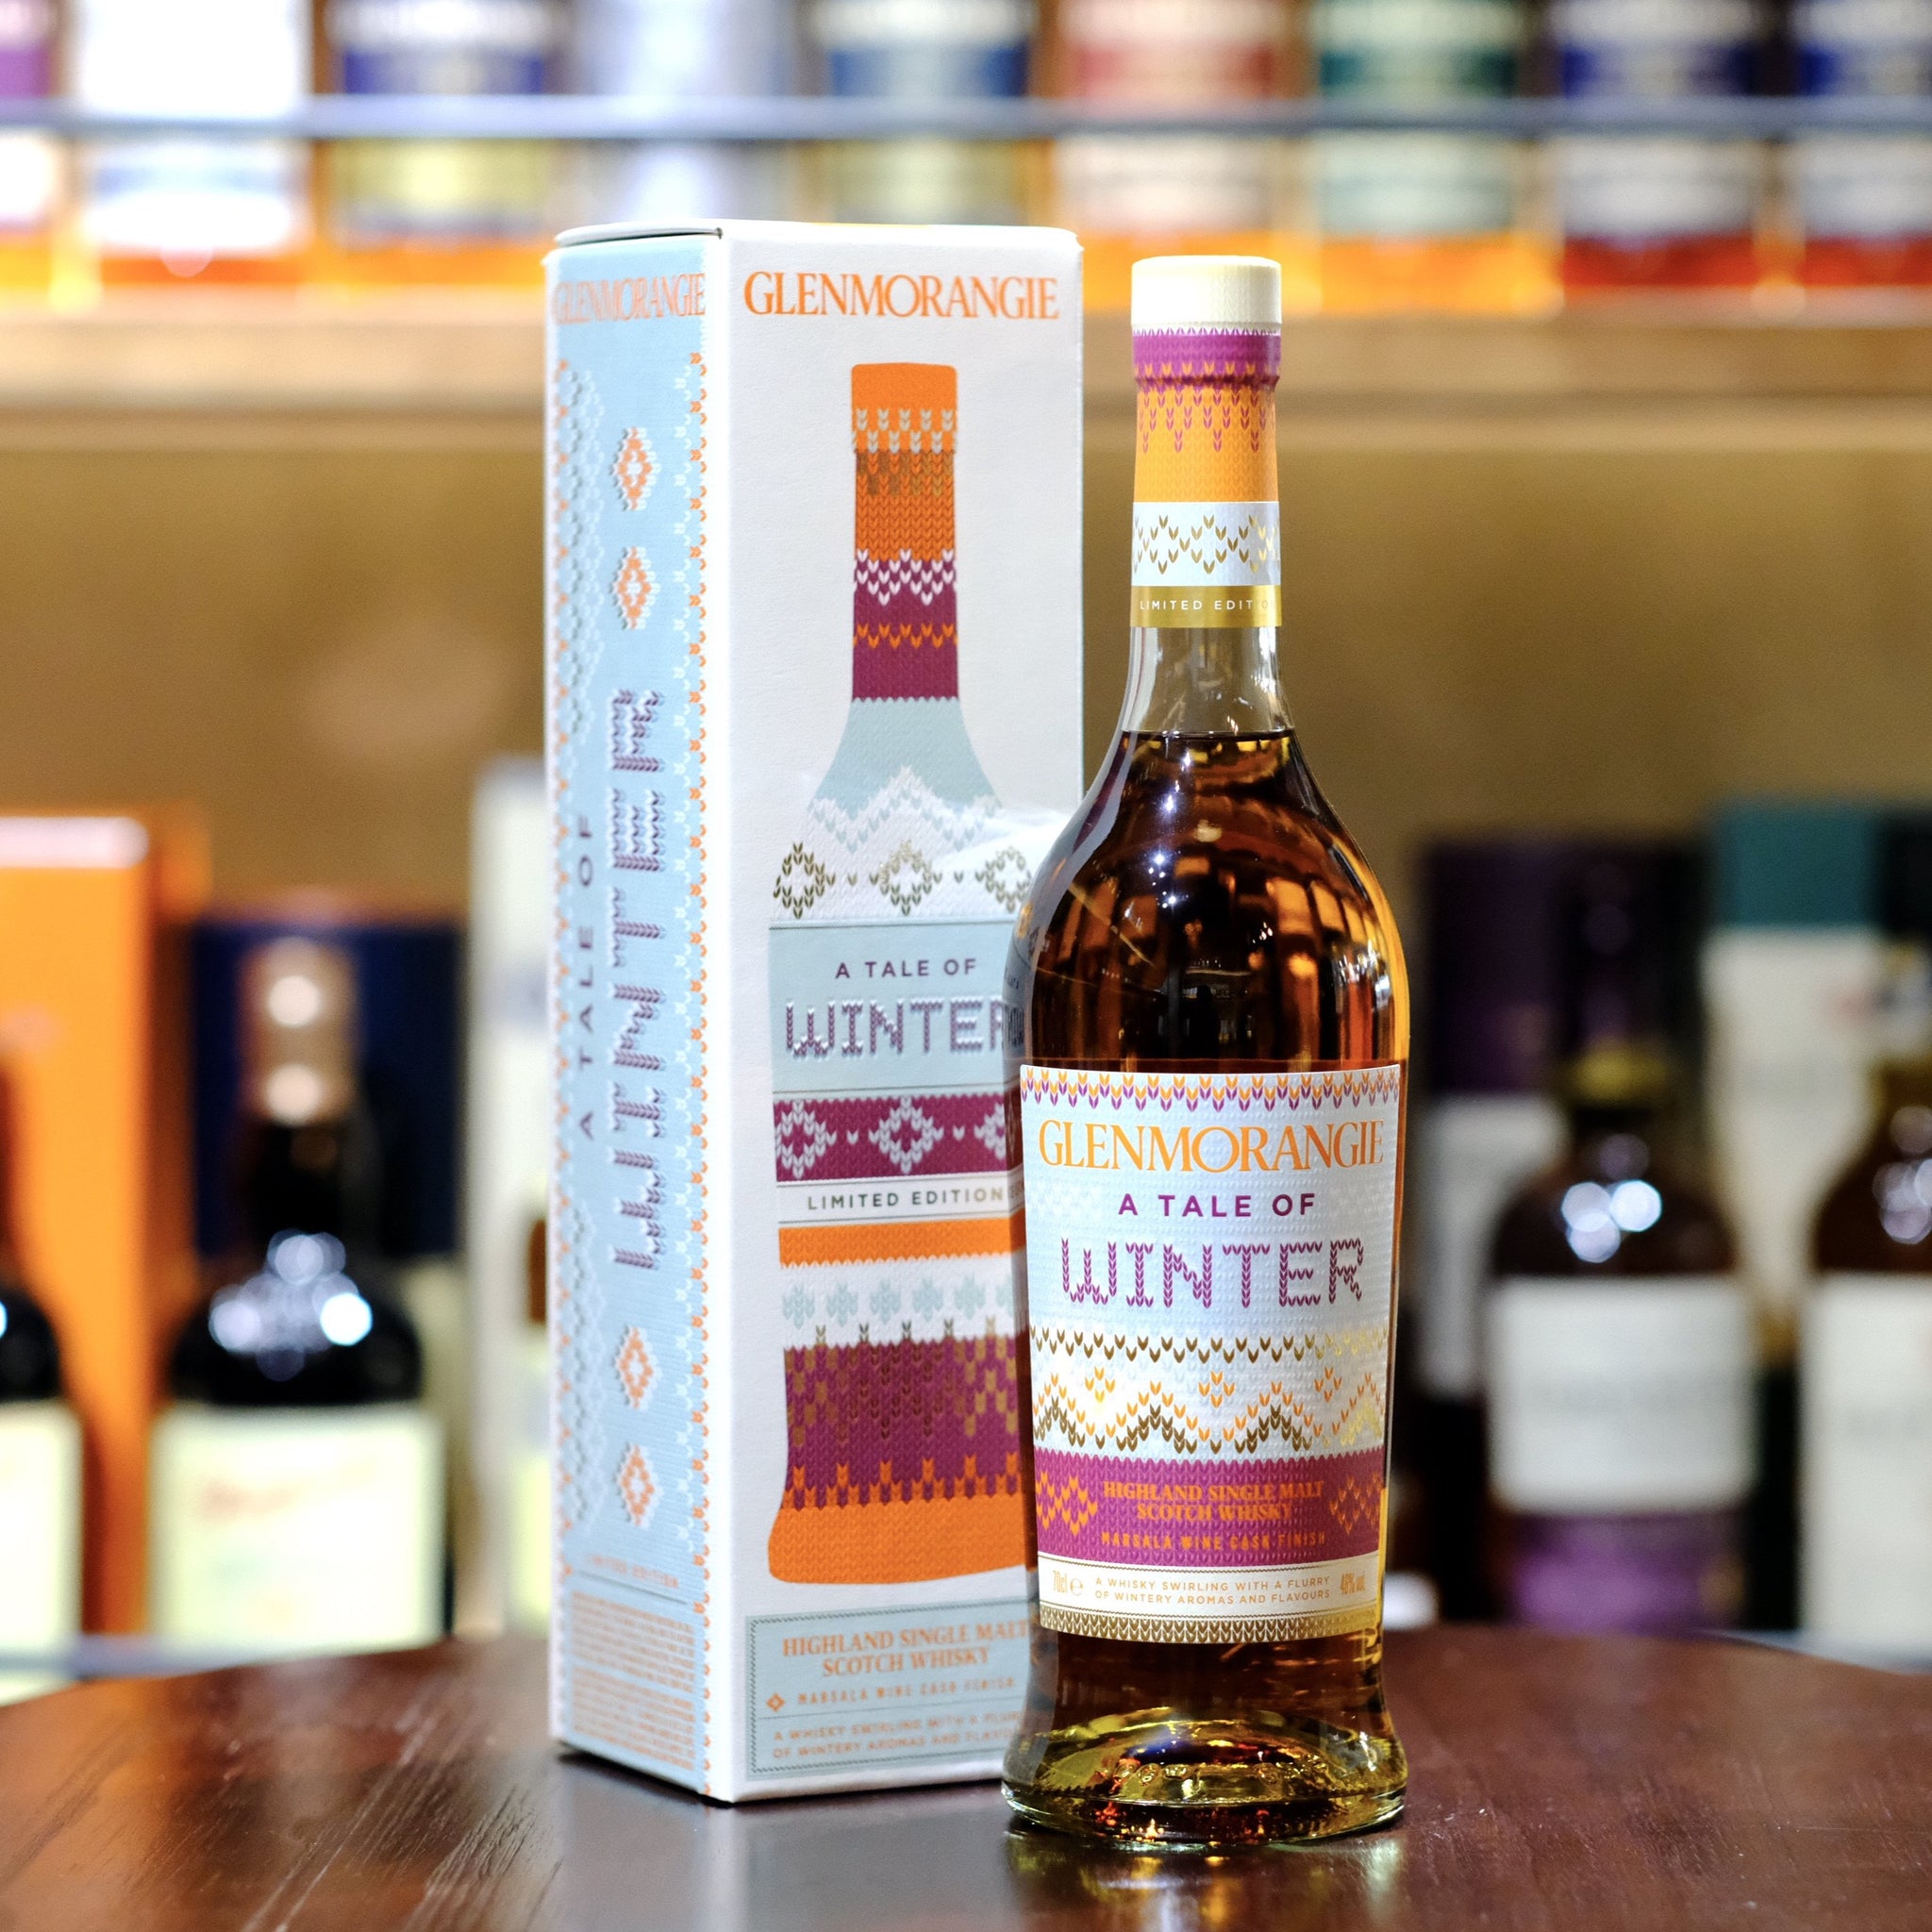 Glenmorangie A Tale of Winter Limited Edition Single Malt Scotch Whisky